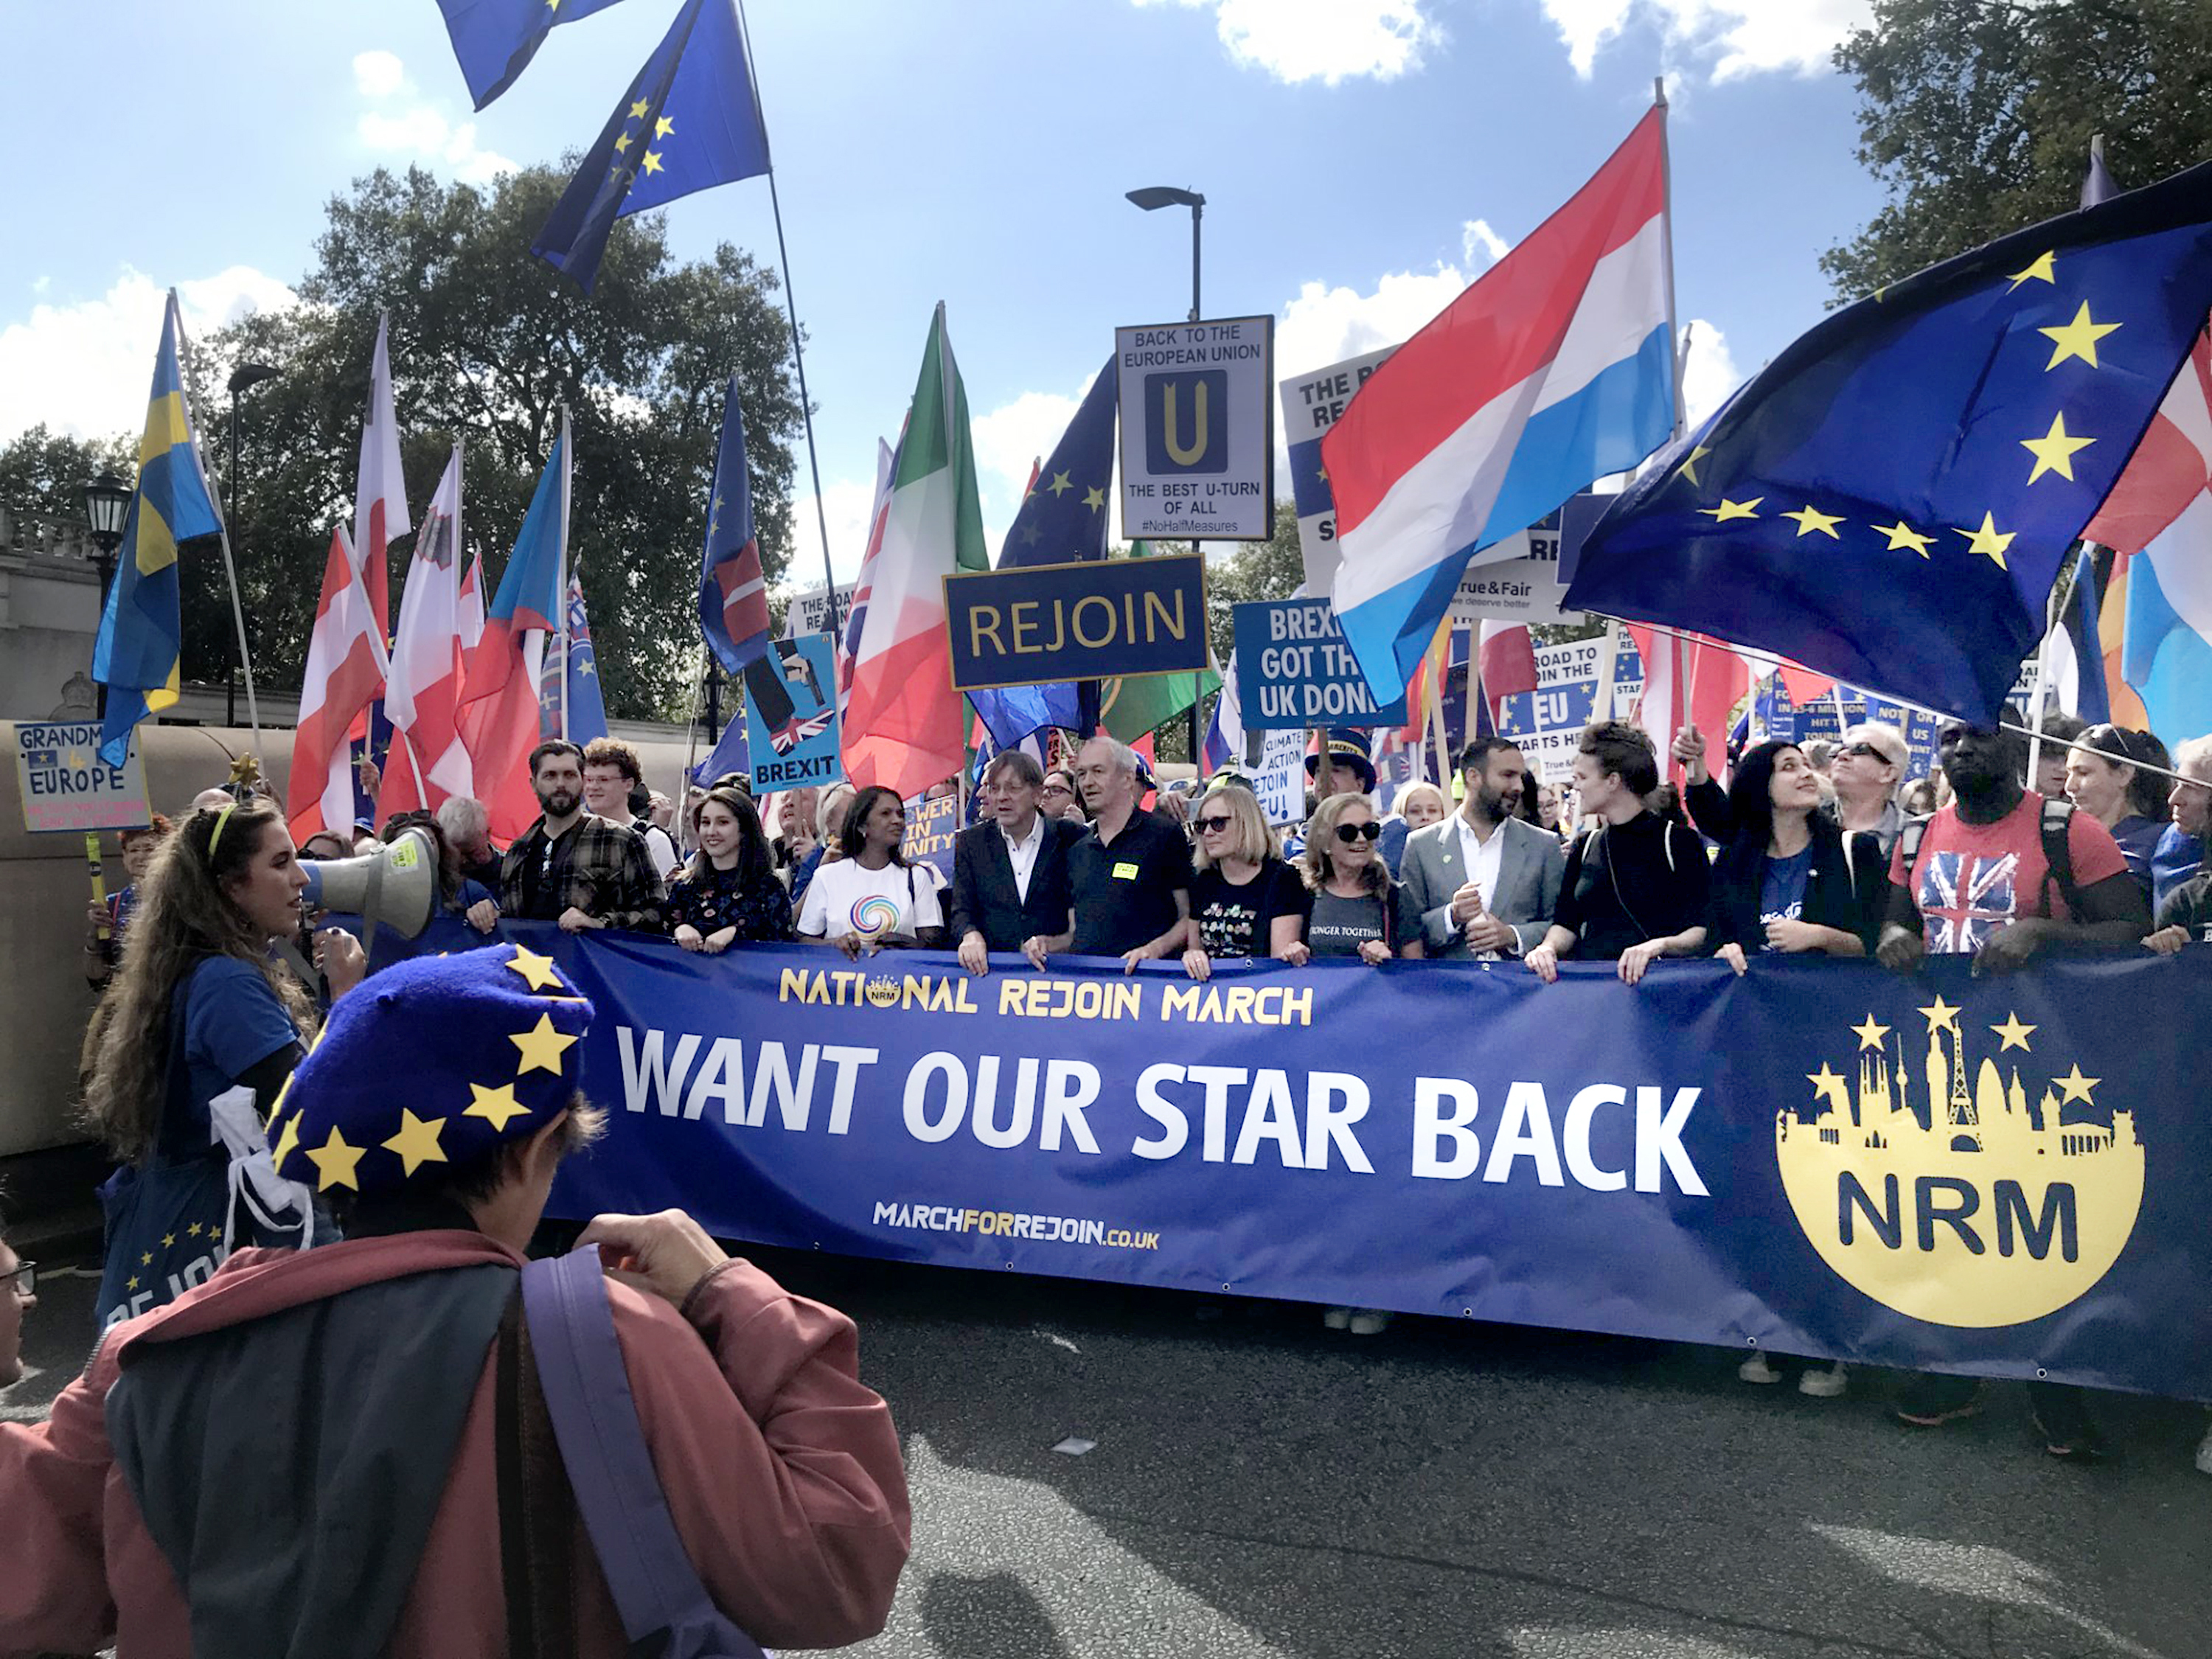 Marcha anti-Brexit, este sbado, en Londres.